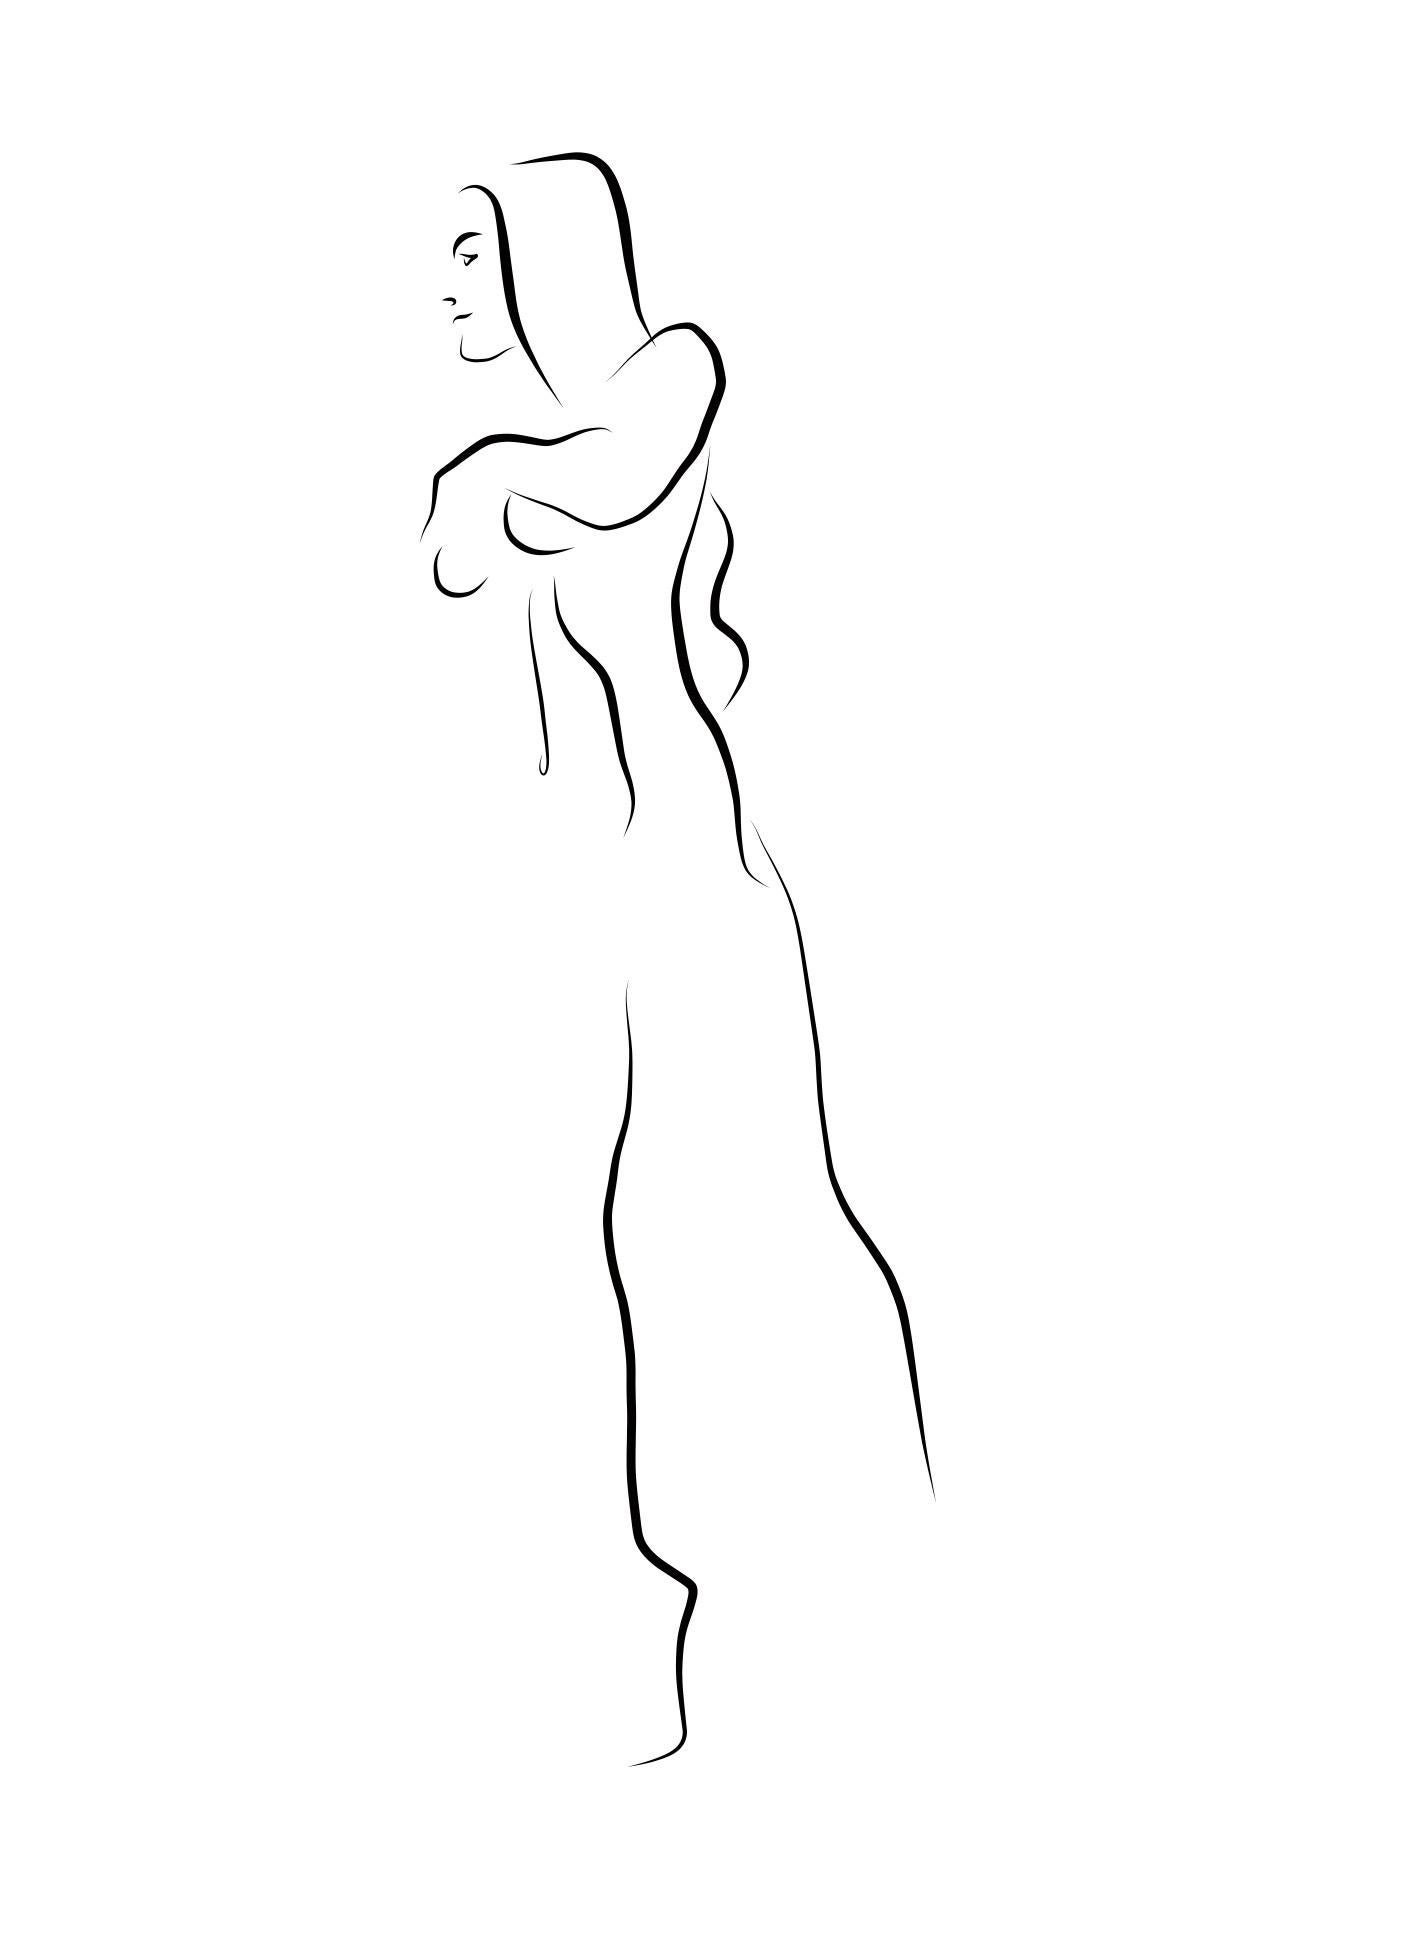 Michael Binkley Nude Print - Haiku #12  - Digital Vector Drawing B&W Walking Female Nude Woman Figure